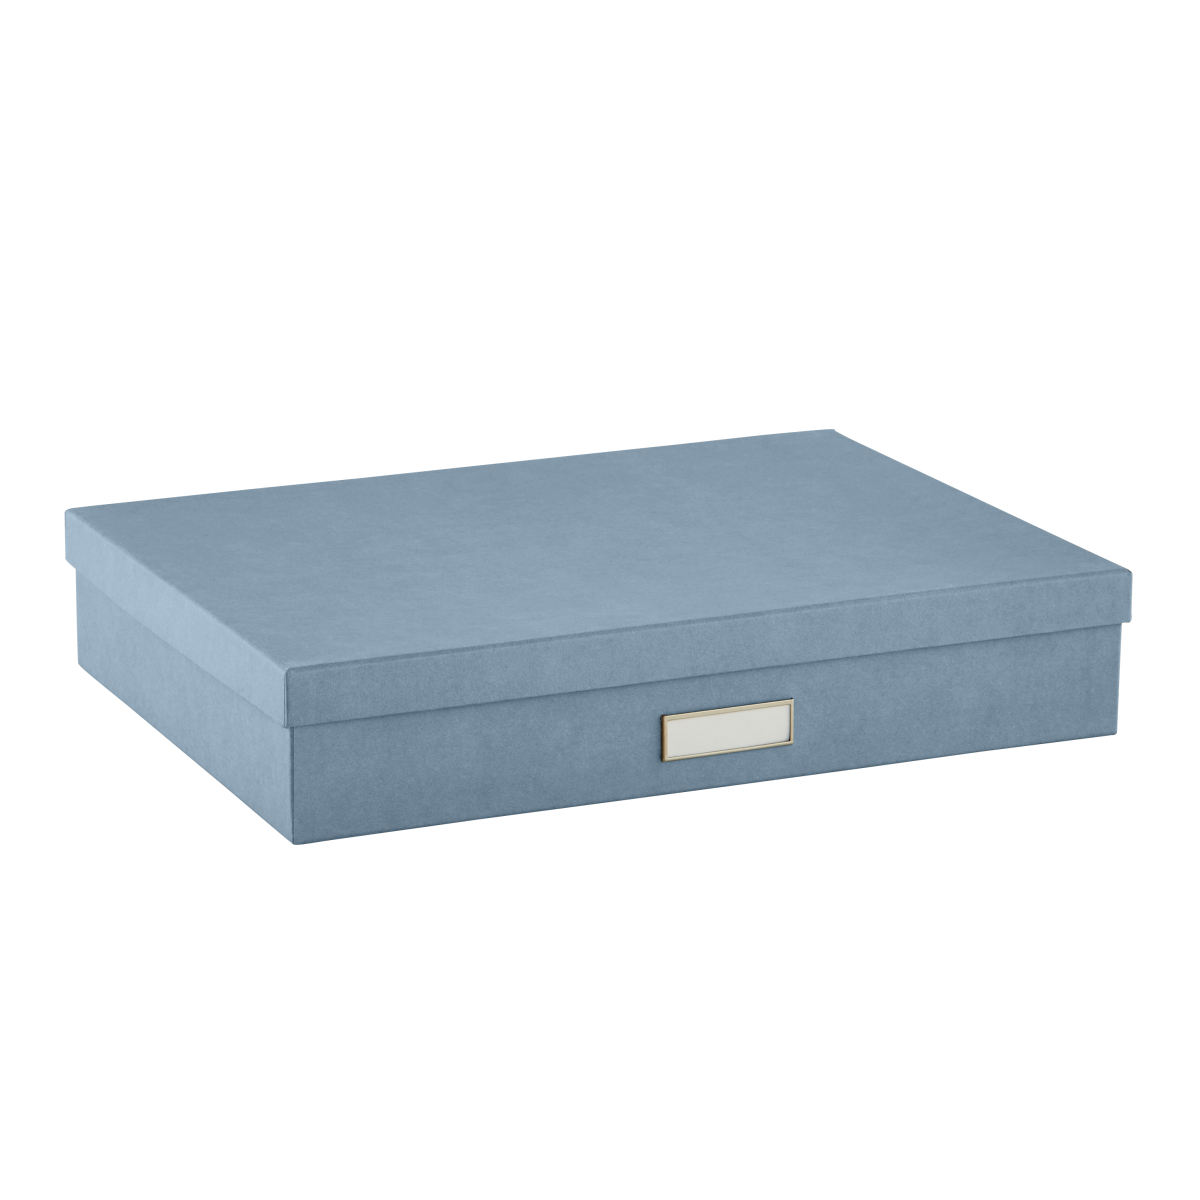 etc juguetes Bigso Box of Sweden Juego de 2 cajas redondas con tapa – Cajas organizadoras para ropa – Cajas de almacenaje decorativas de tablero de fibras y papel con aspecto de lino – azul